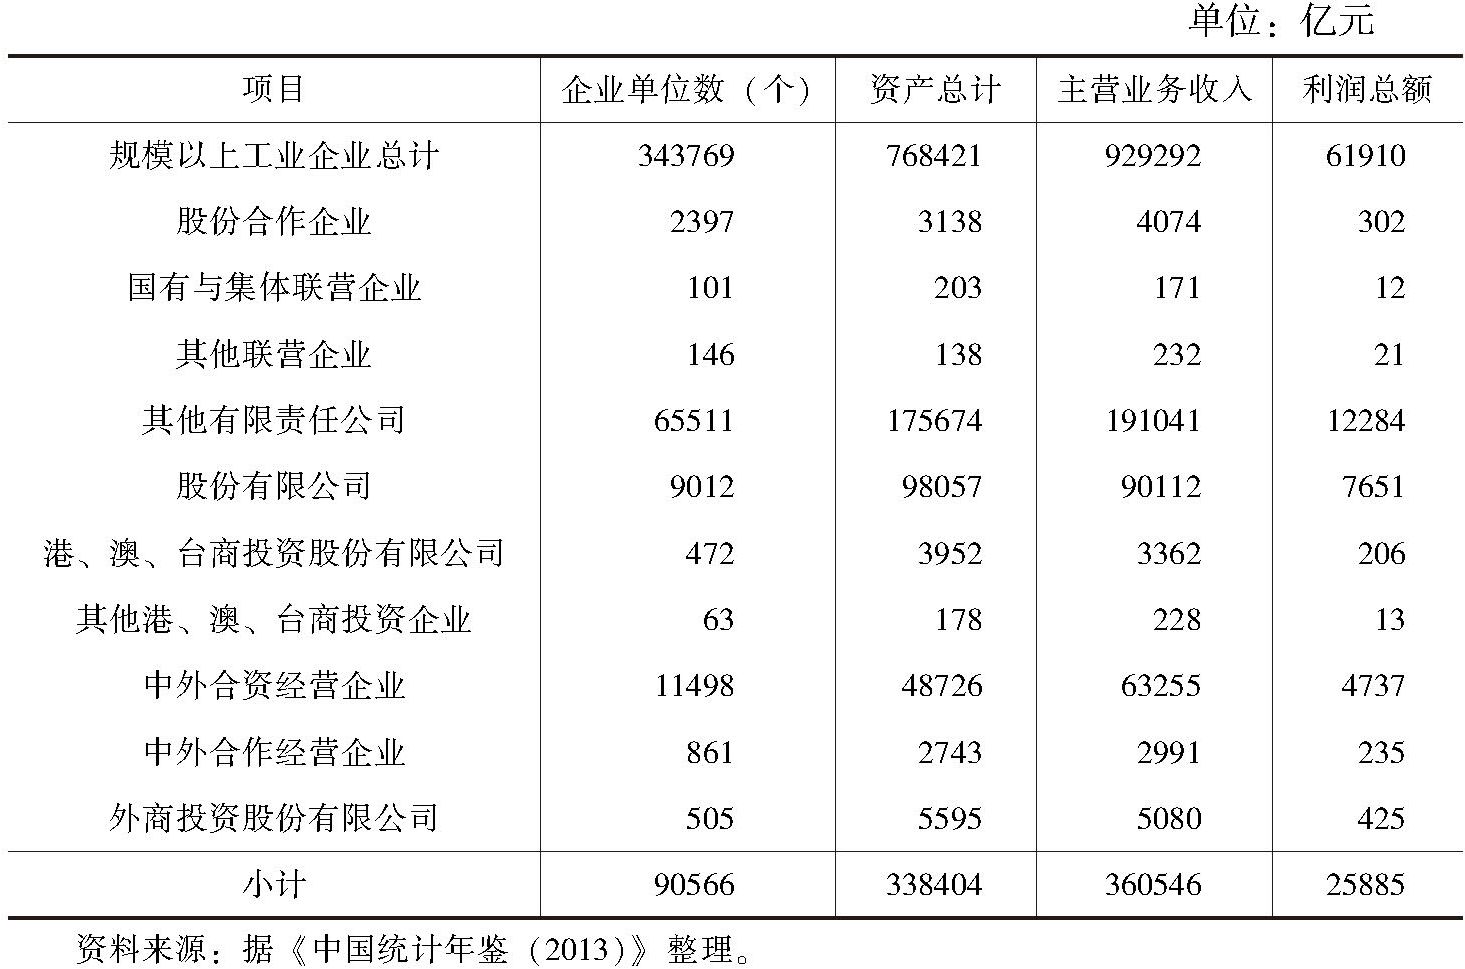 表1 2012年中国混合所有制工业企业有关数据